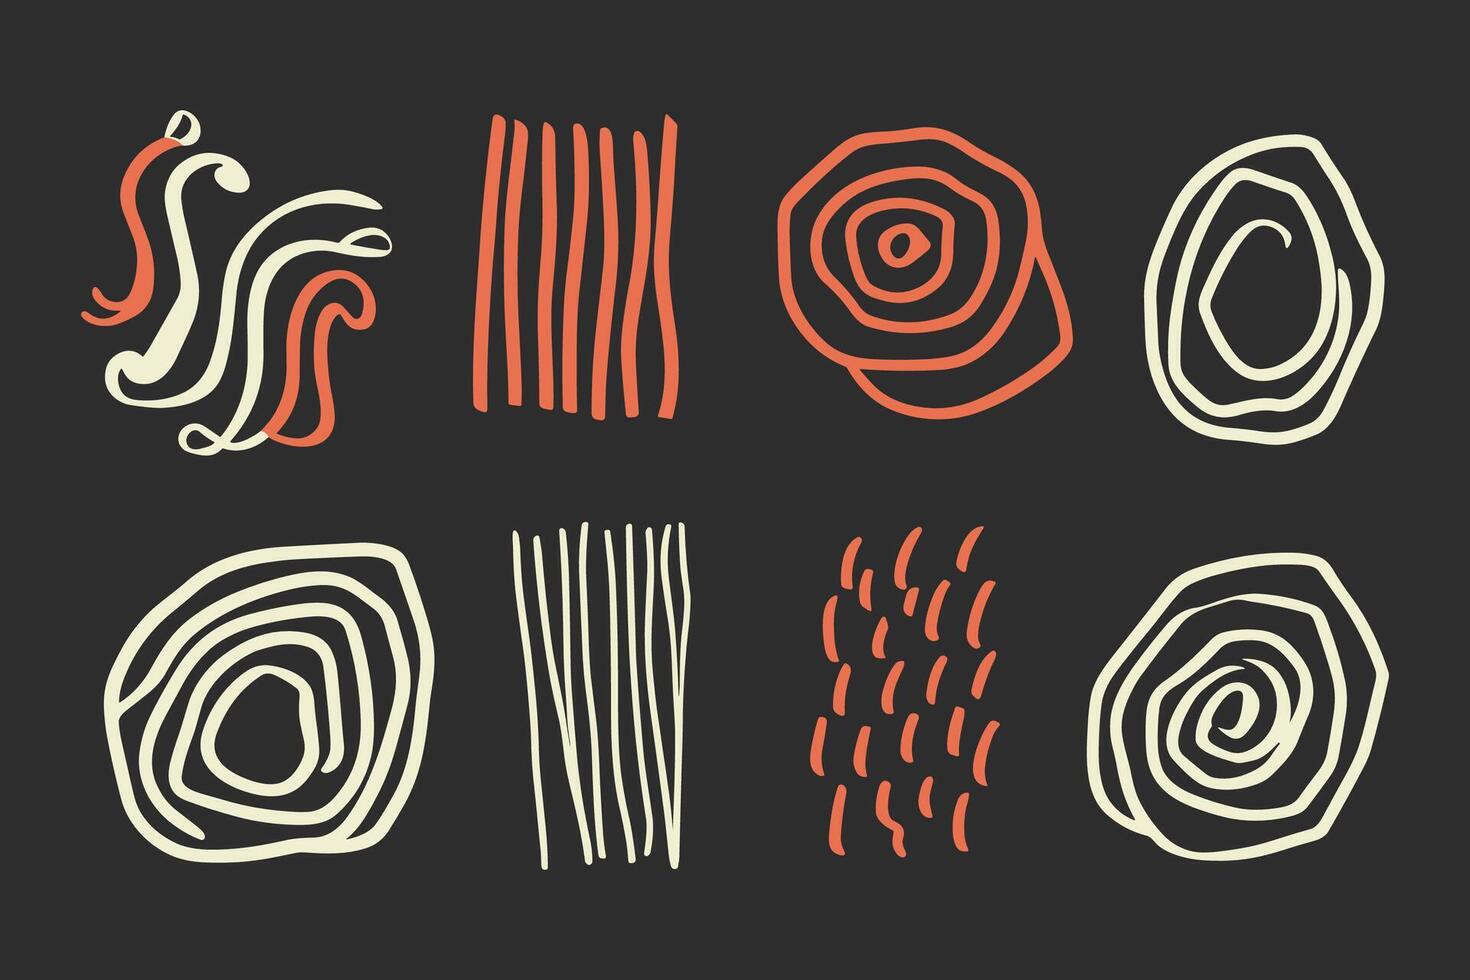 reeks van abstract doodles voor ontwerp van patronen vector